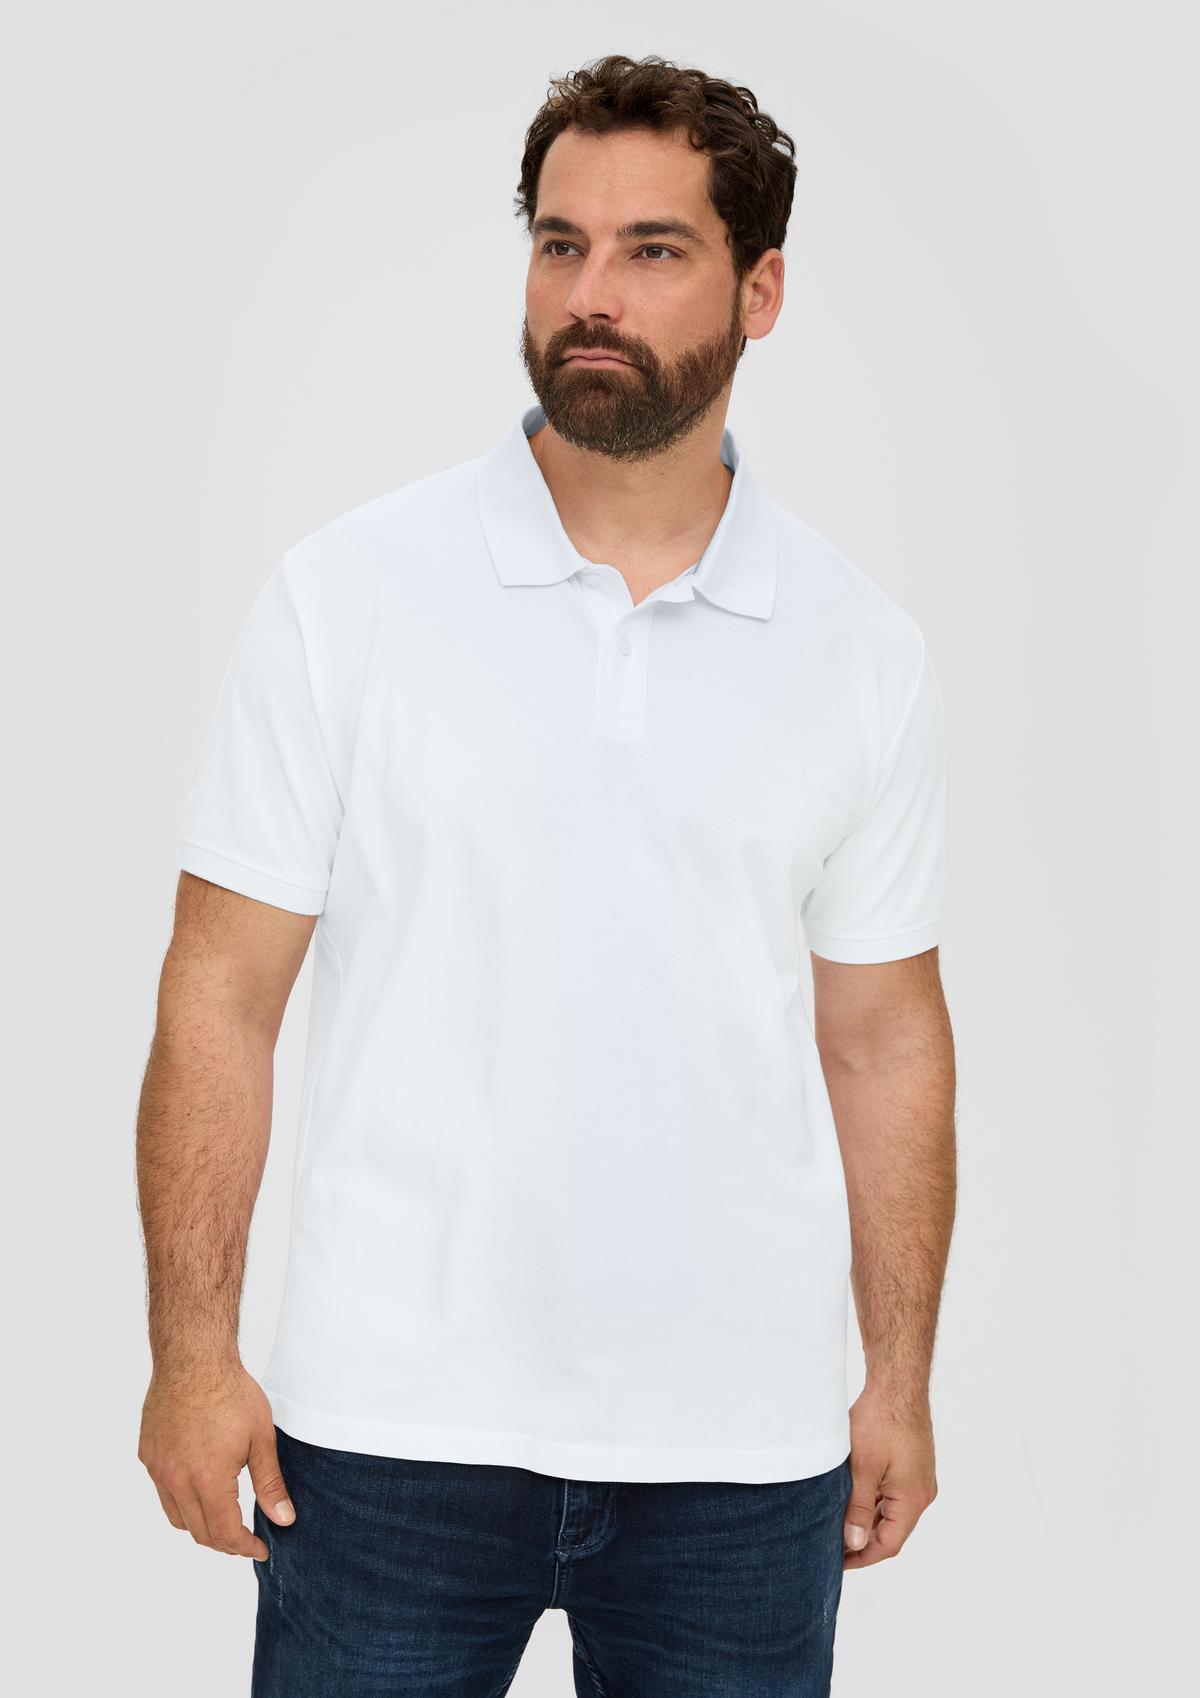 Polo shirt with a logo - appliqué navy